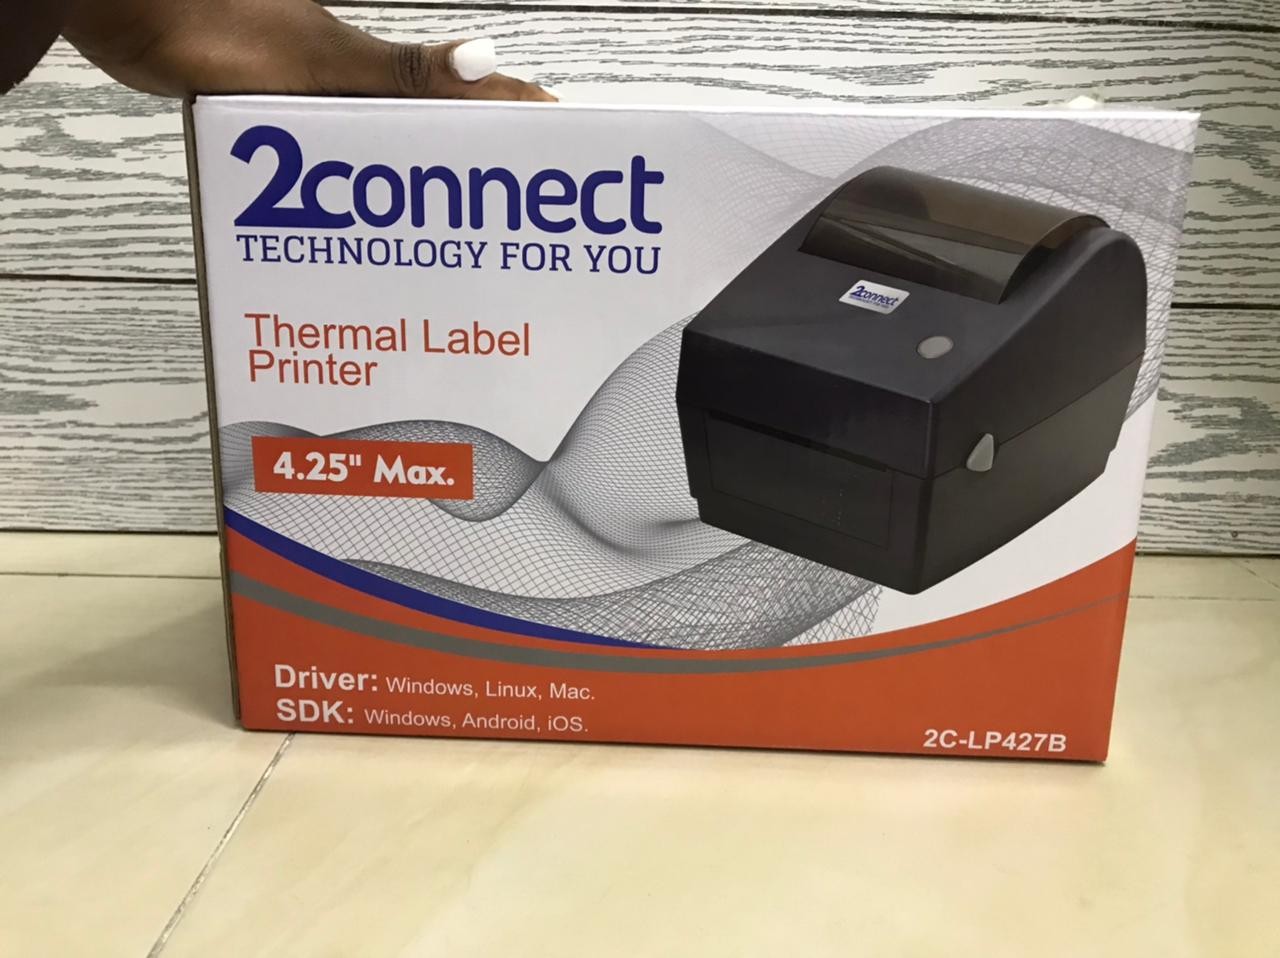 Impresora Térmica de label etiquetas similar a la zebra 3